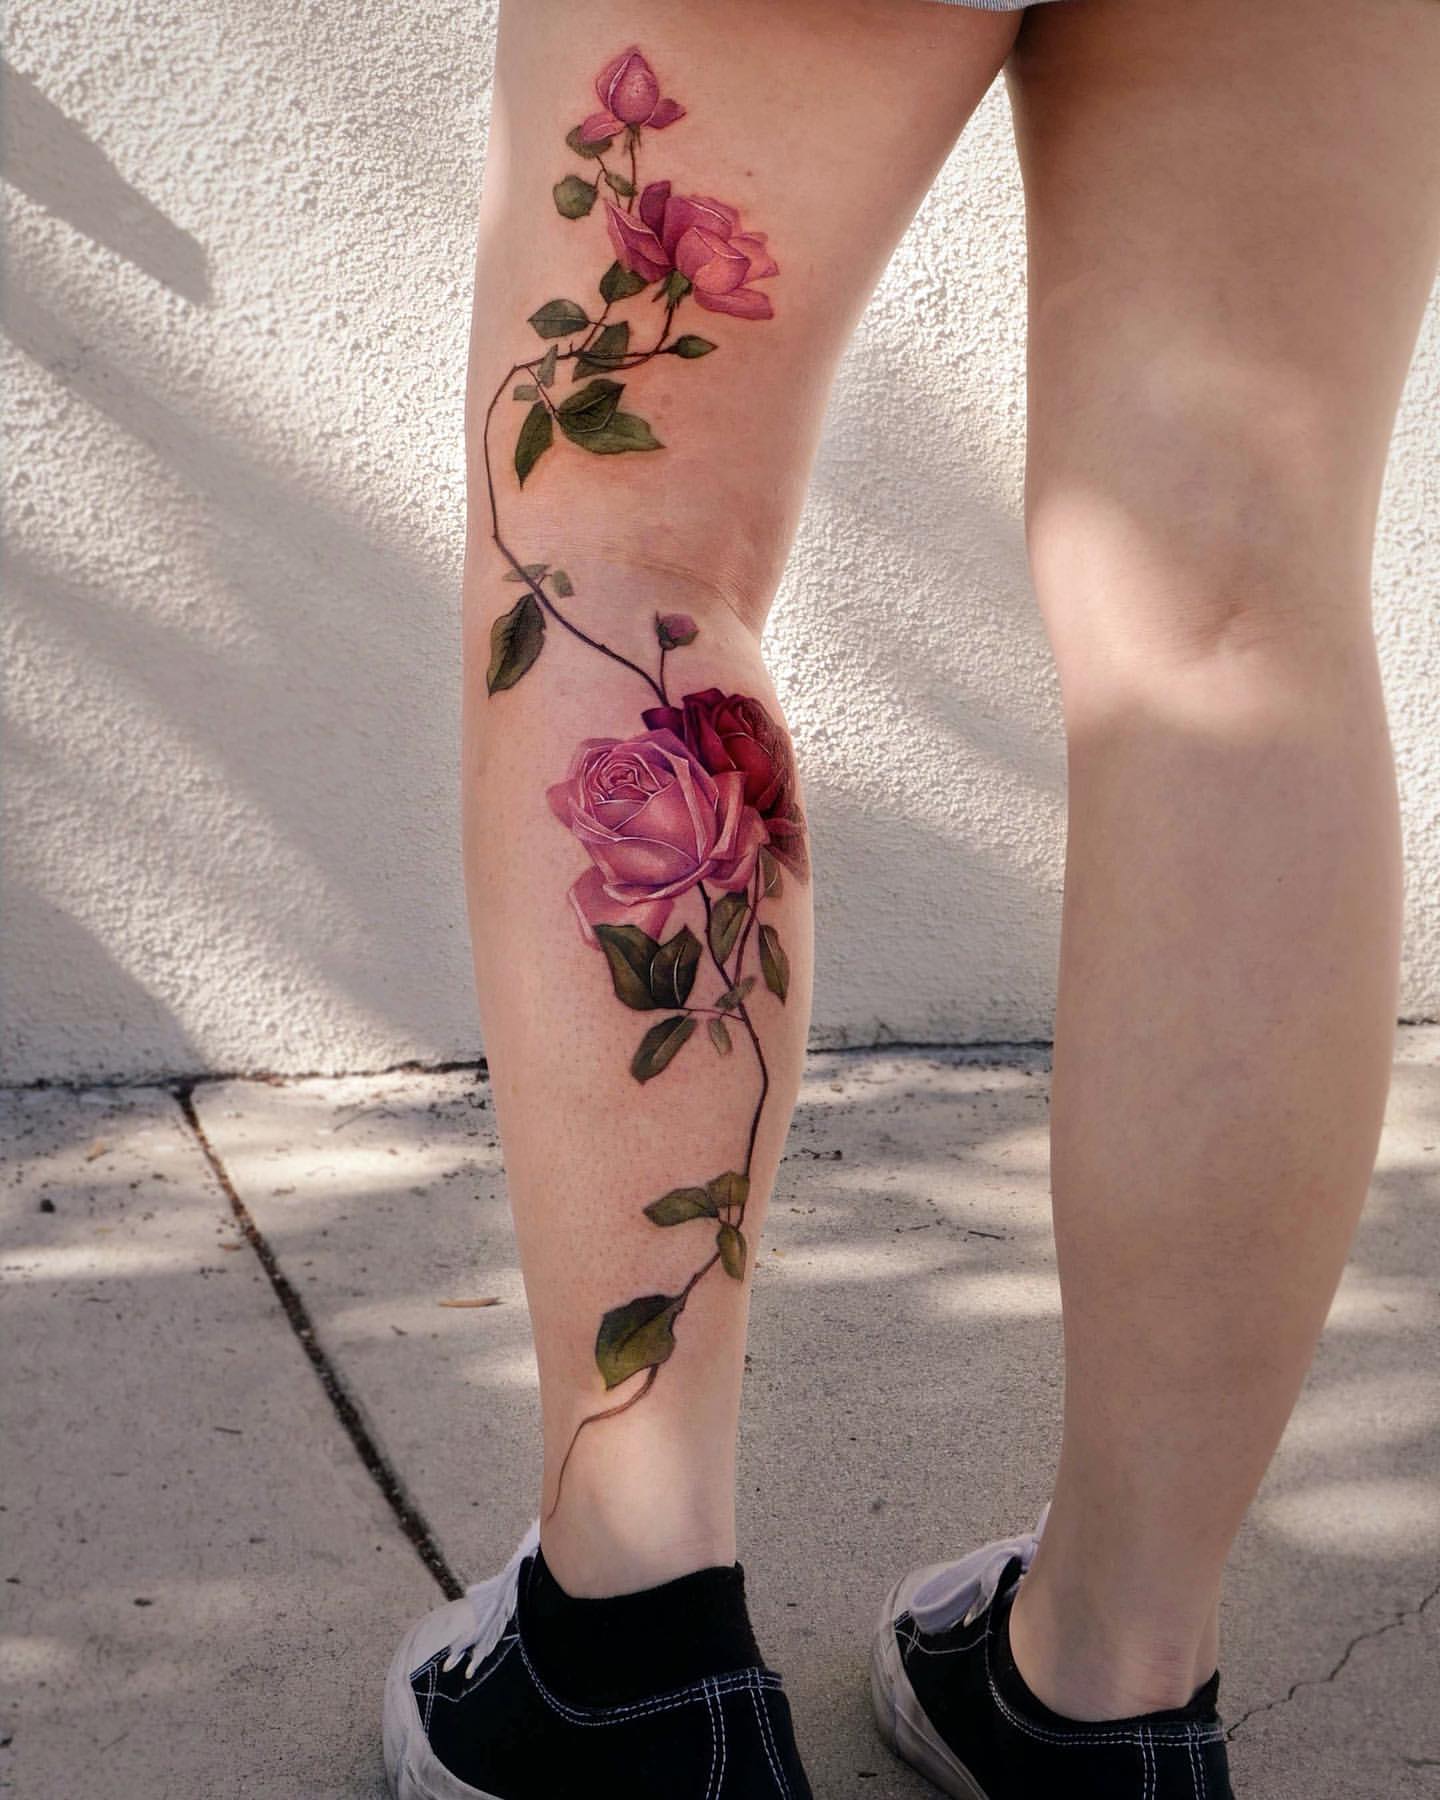 Flower Tattoo Ideas, Rose Tattoo